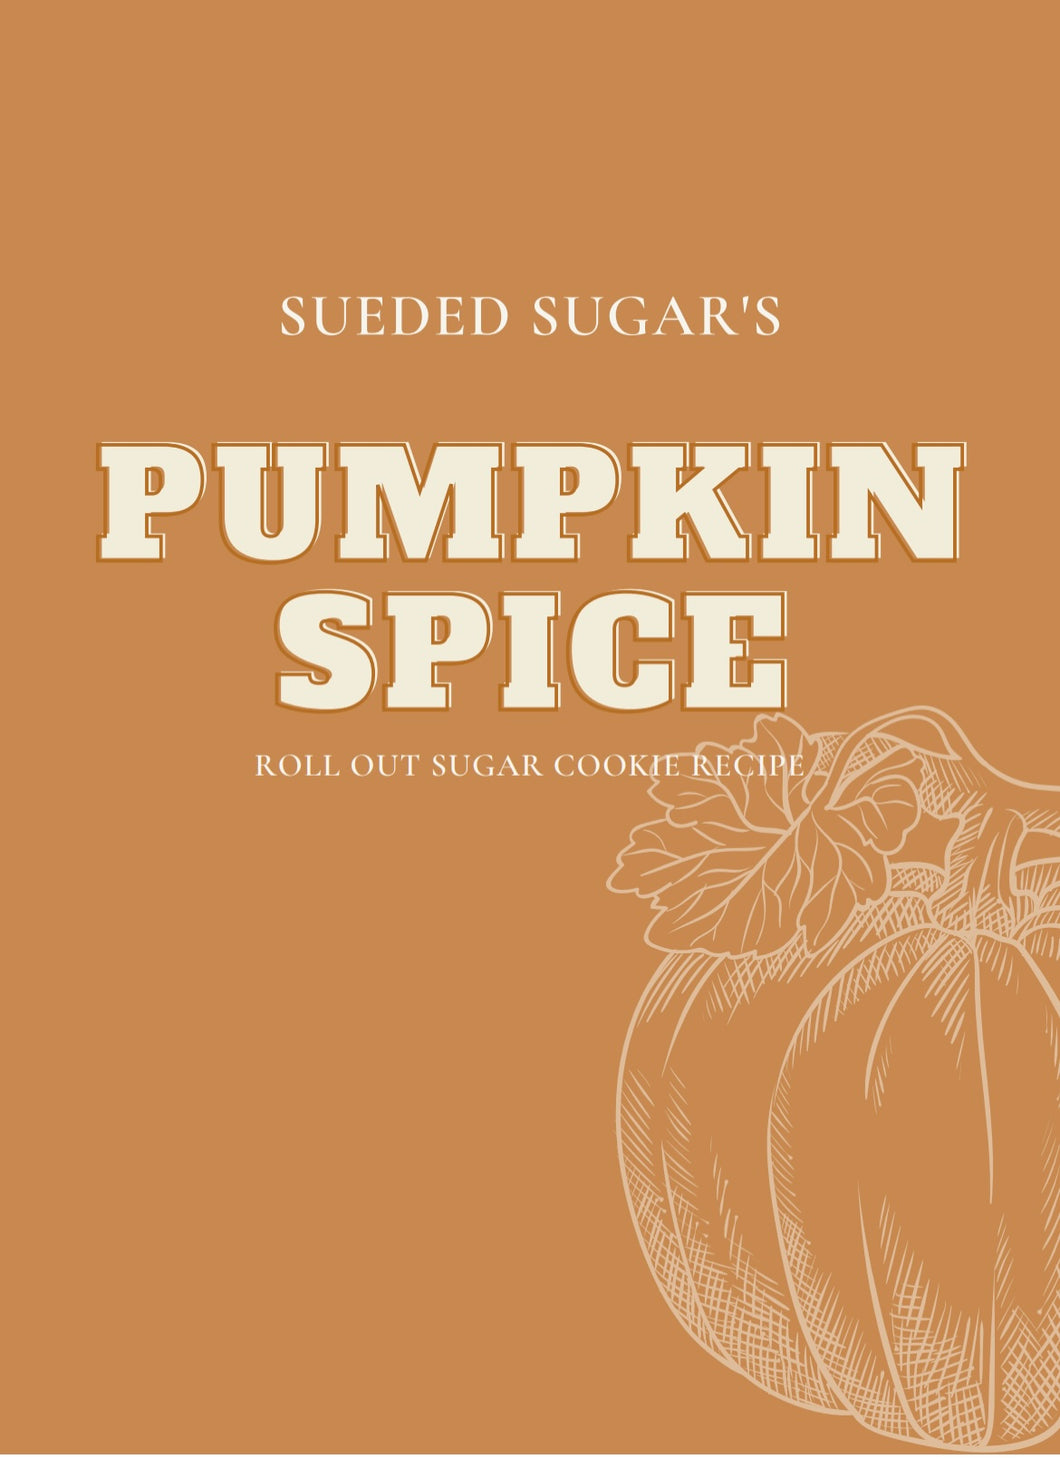 Pumpkin Spice roll-out sugar cookie recipe